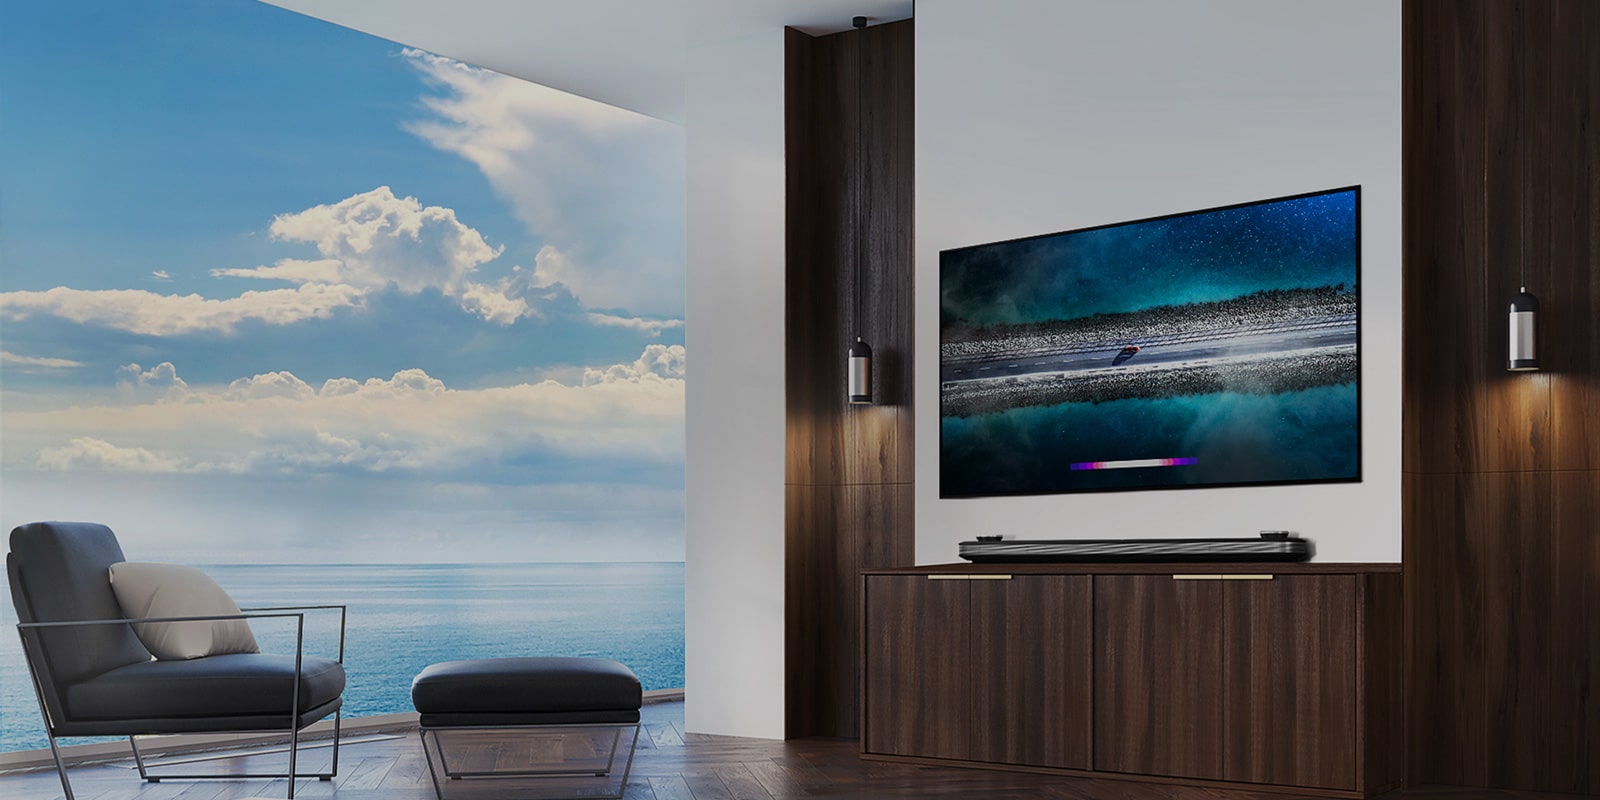 LG SIGNATURE OLED TV W9 está colgado en la pared y se coloca un sofá justo en frente de la televisión con el cielo azul sobre la ventana.